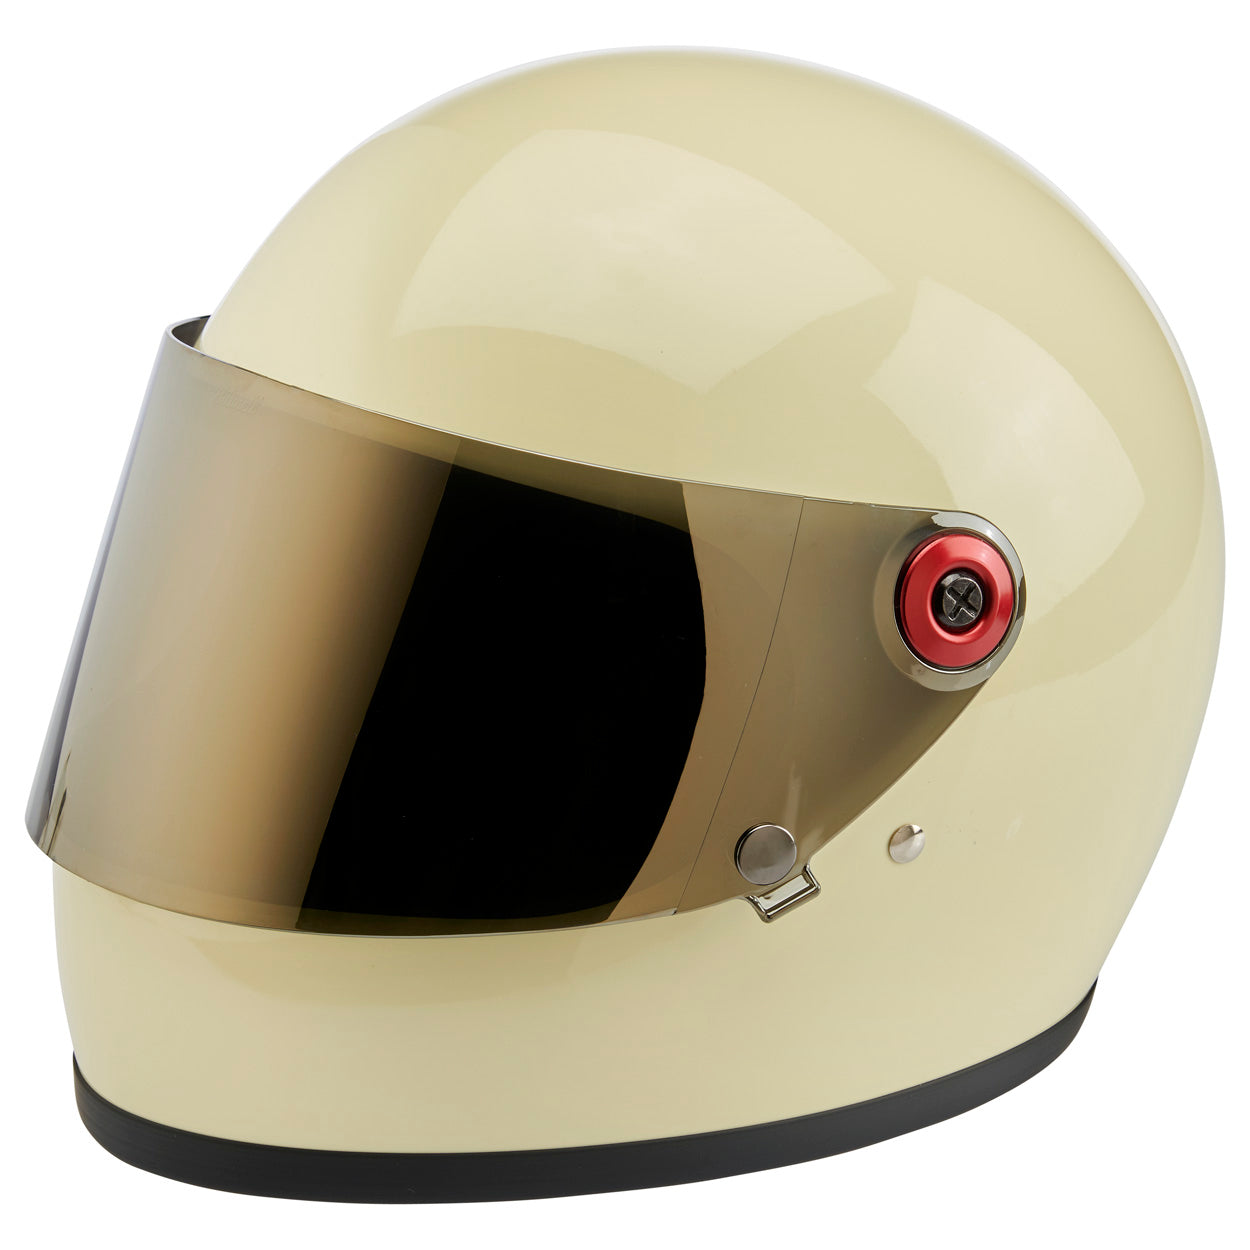 Helmet Hardware Kit - Black Screw / Red Baseplate